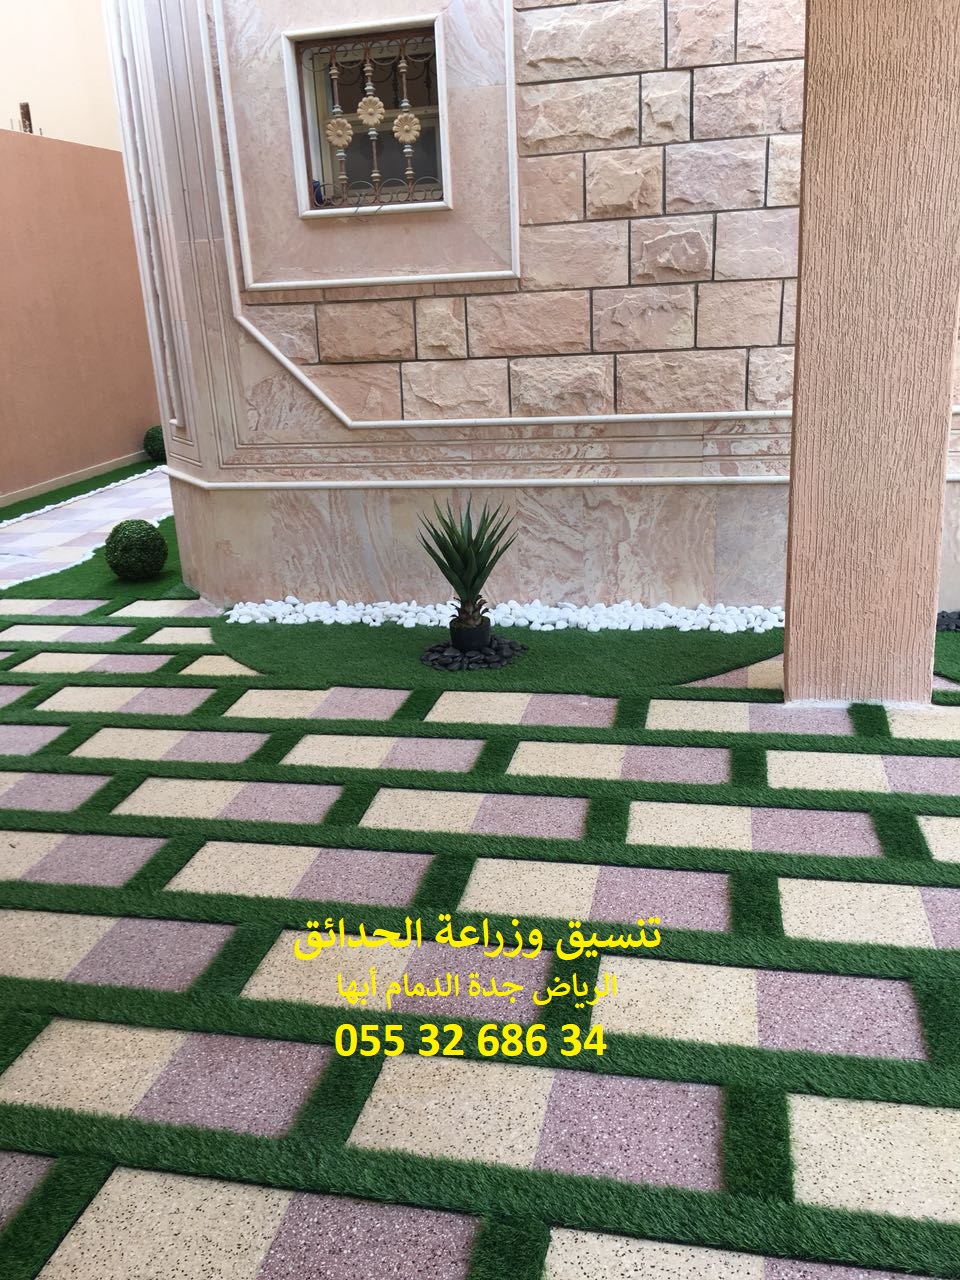 شركة تنسيق حدائق الرياض جدة الدمام ابها 0553268634 P_867rlrss4